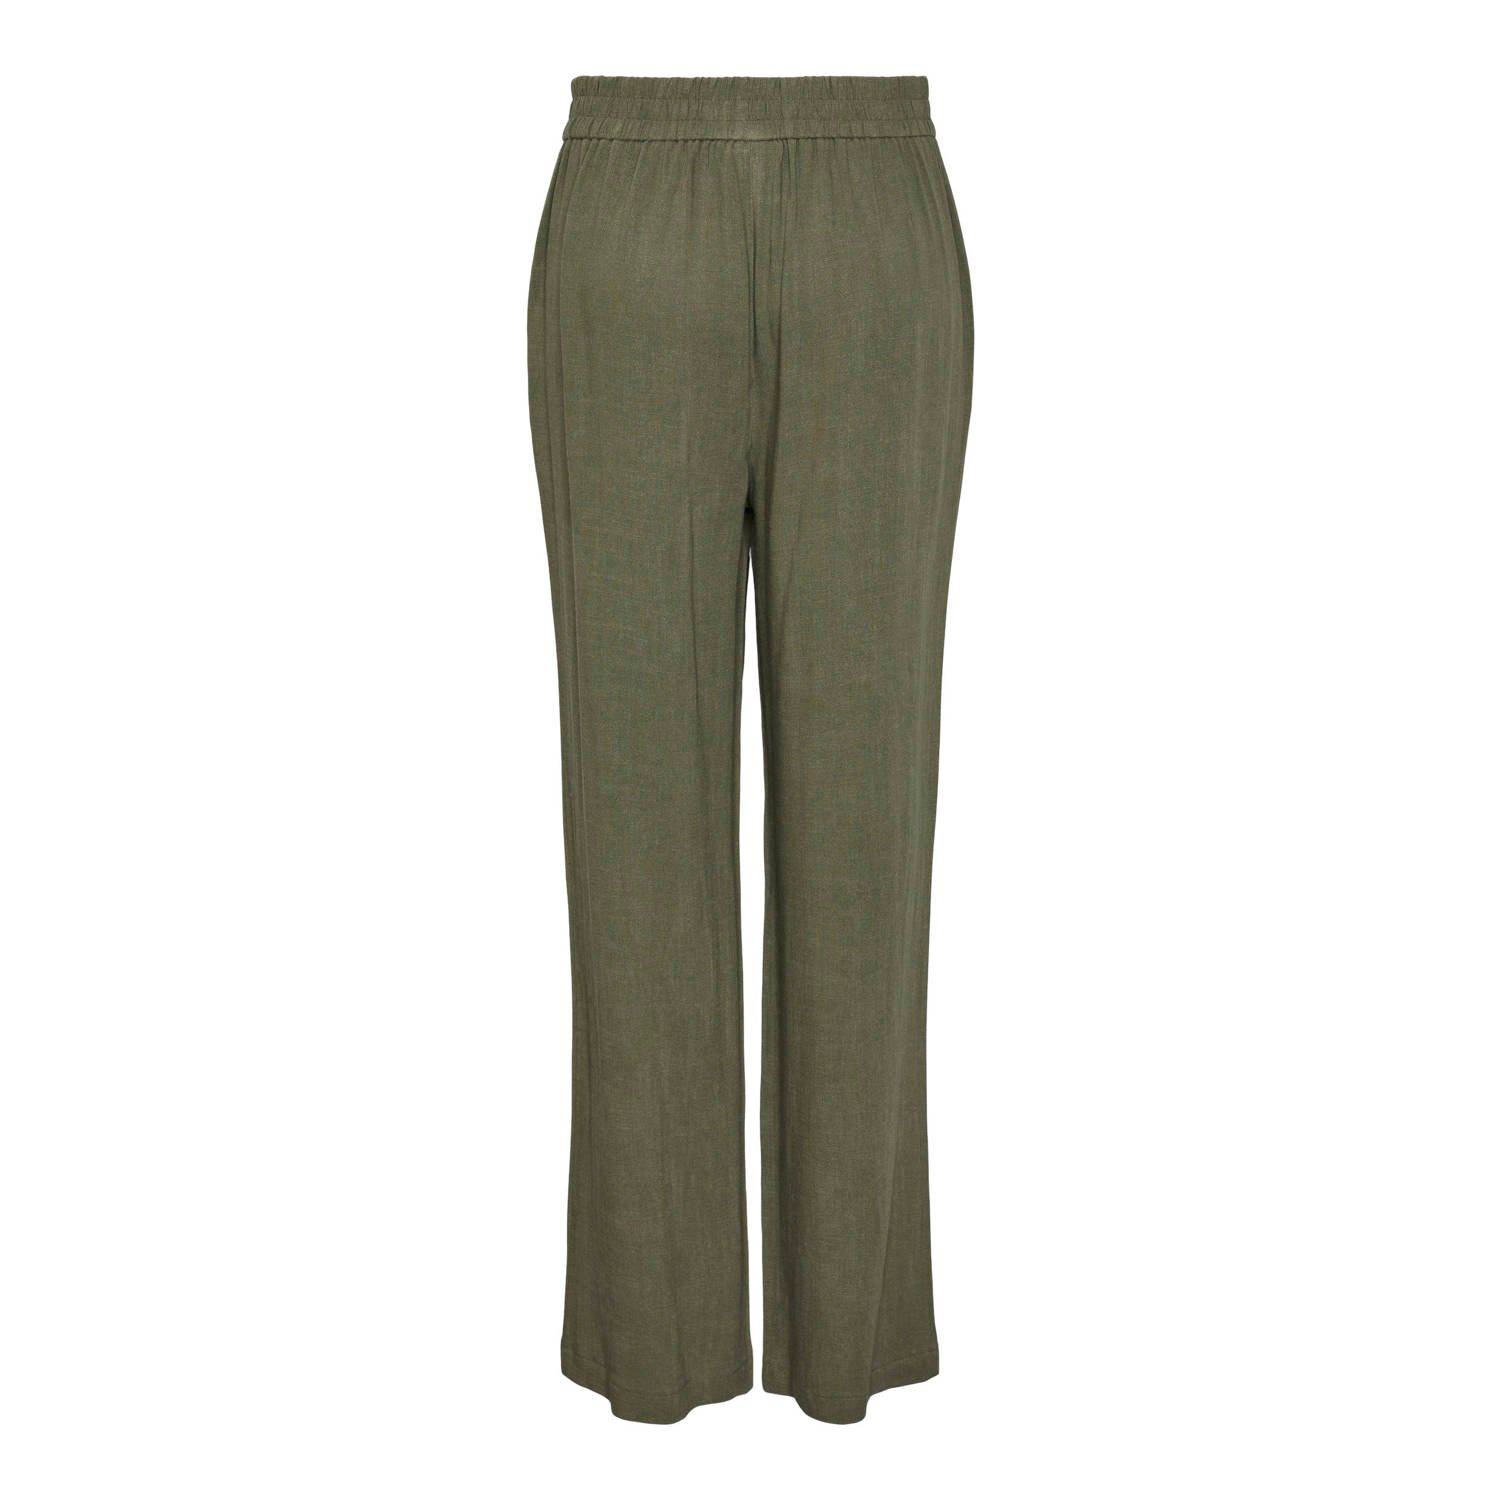 PIECES high waist straight fit pantalon groen